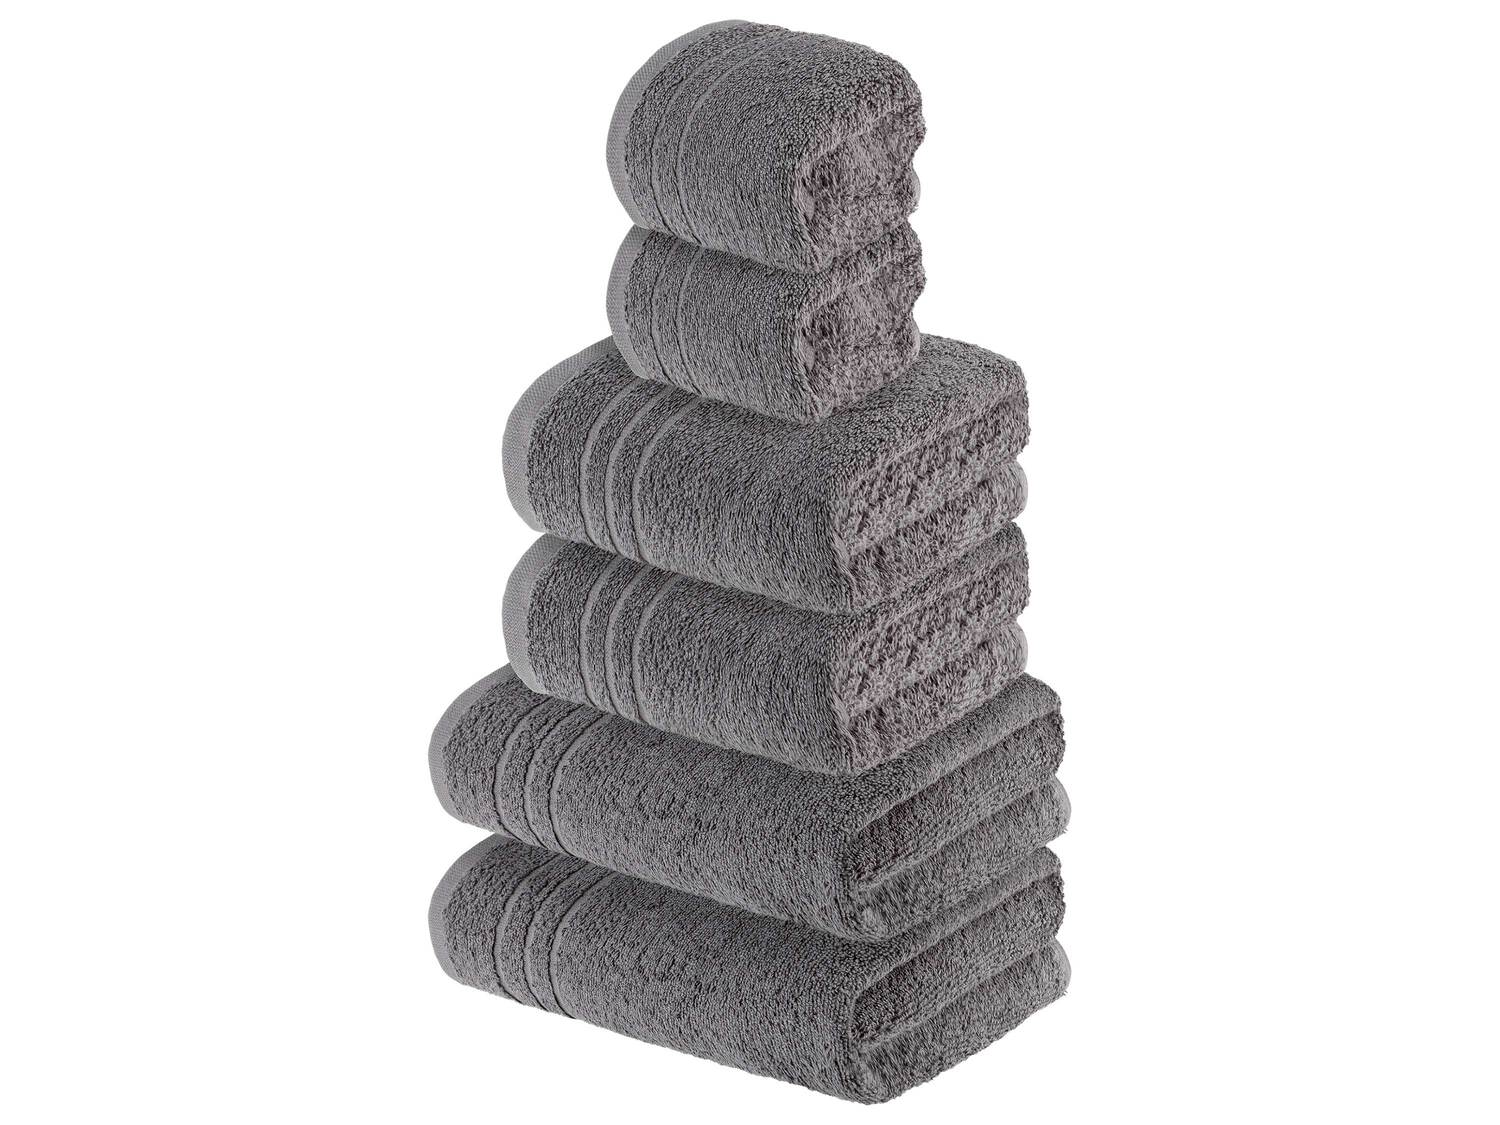 Serviettes de toilette en éponge , le prix 9.99 &#8364; 
- Au choix
- 2 serviettes ...